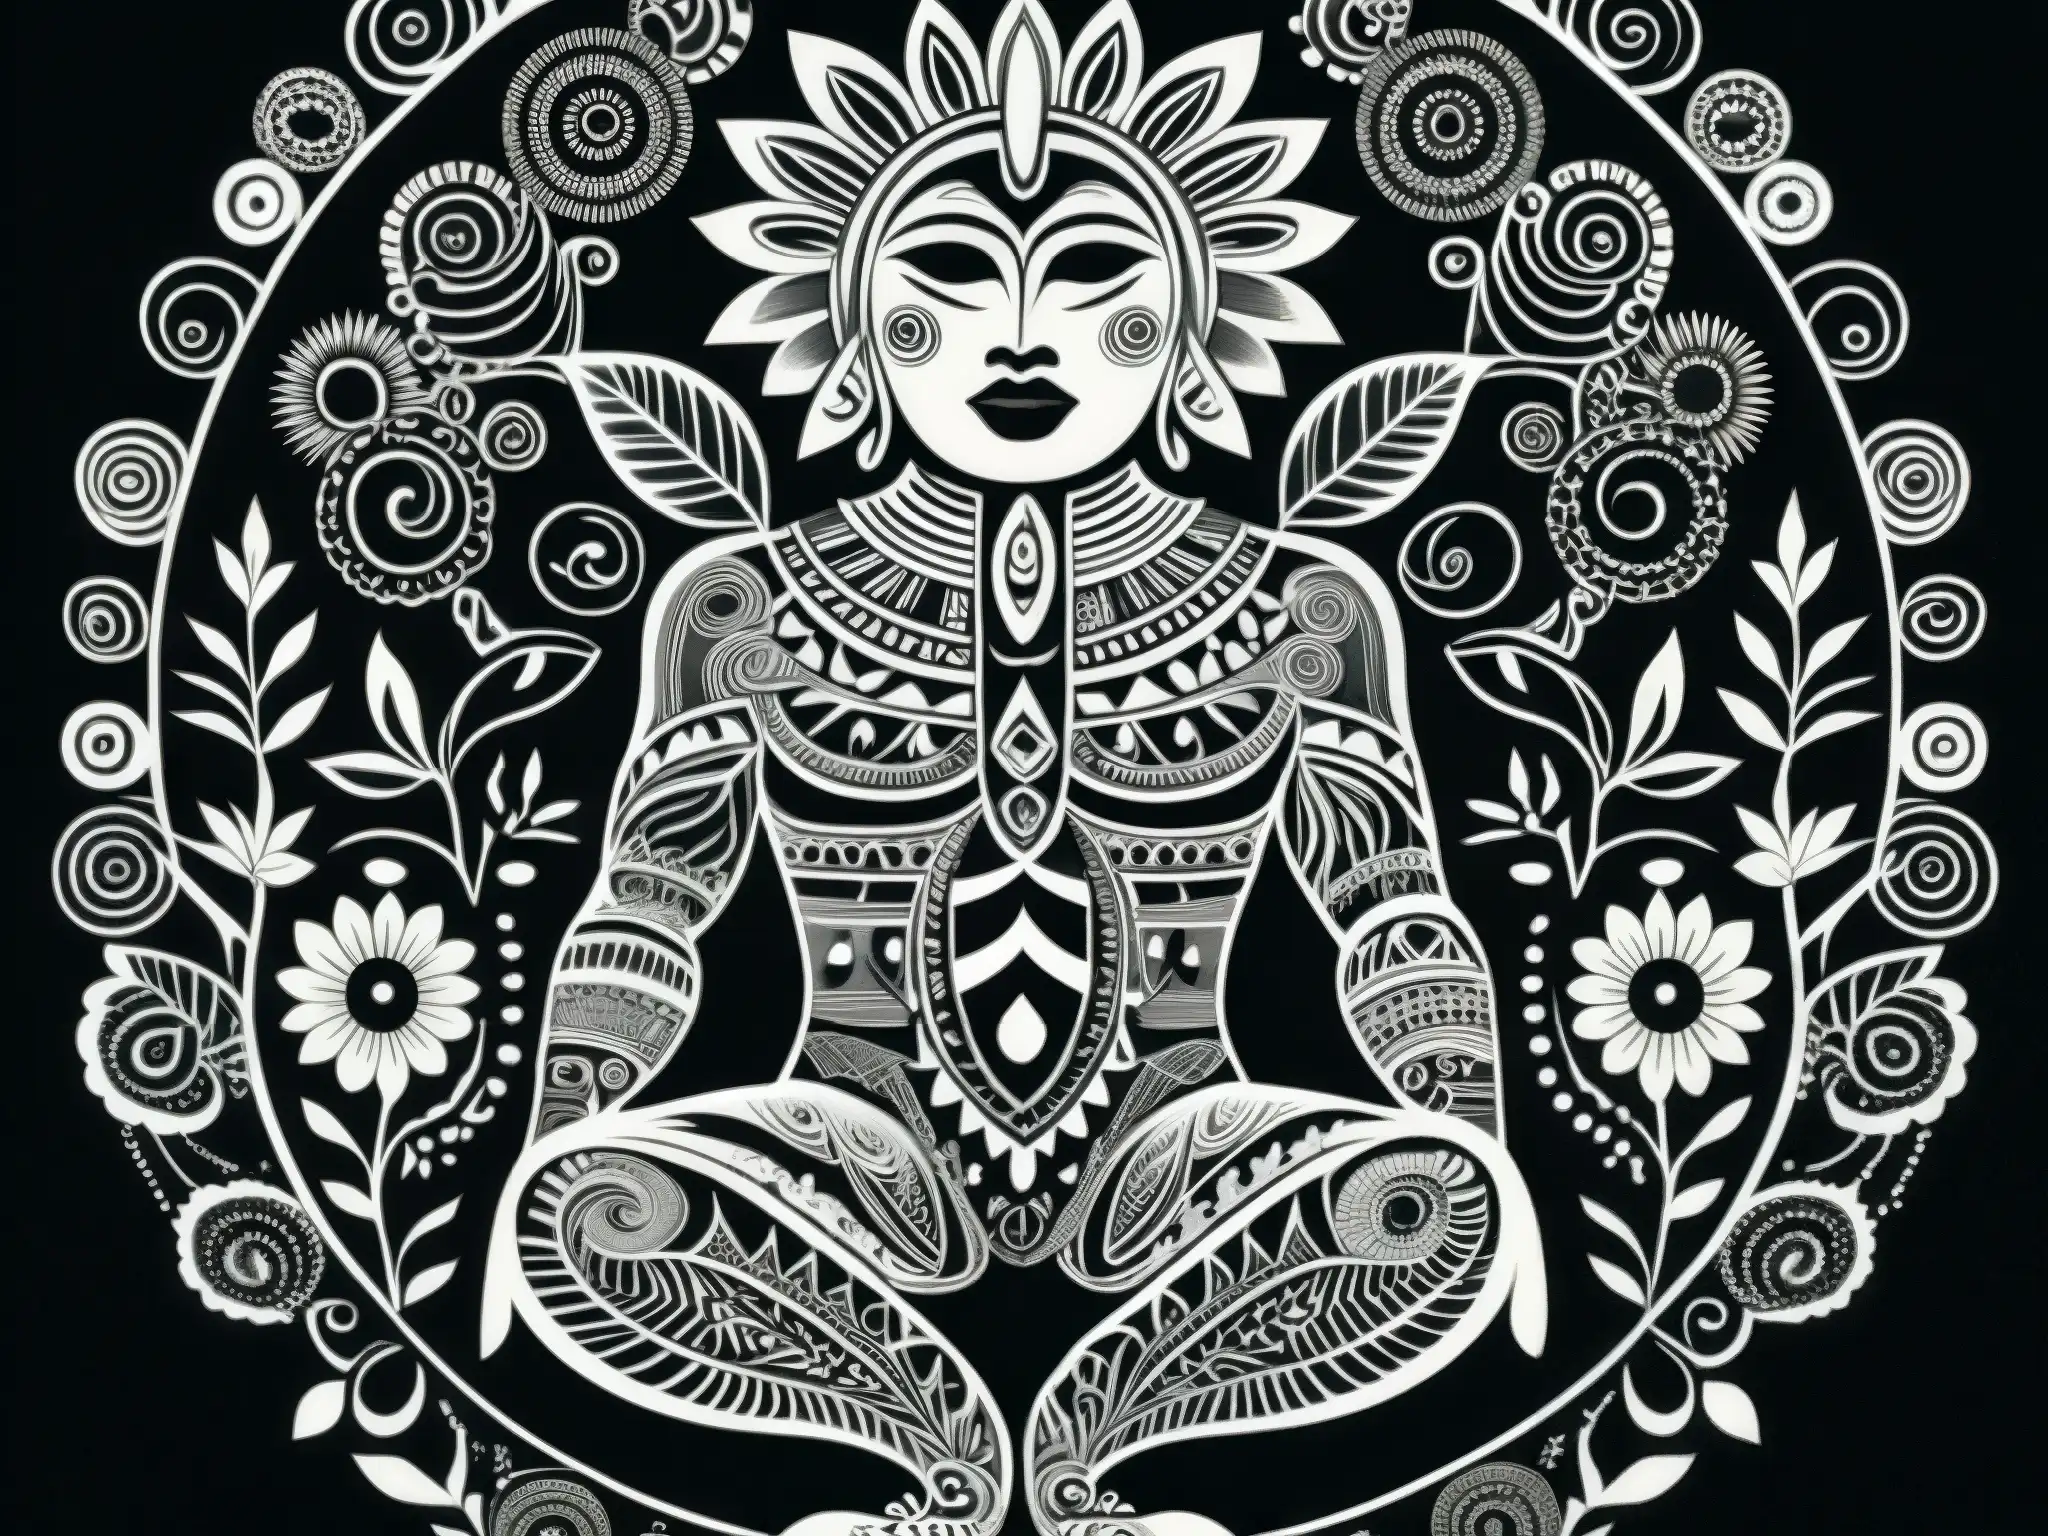 Ilustración detallada en blanco y negro de la transformación de un humano en un místico Nahual, con símbolos y patrones detallados